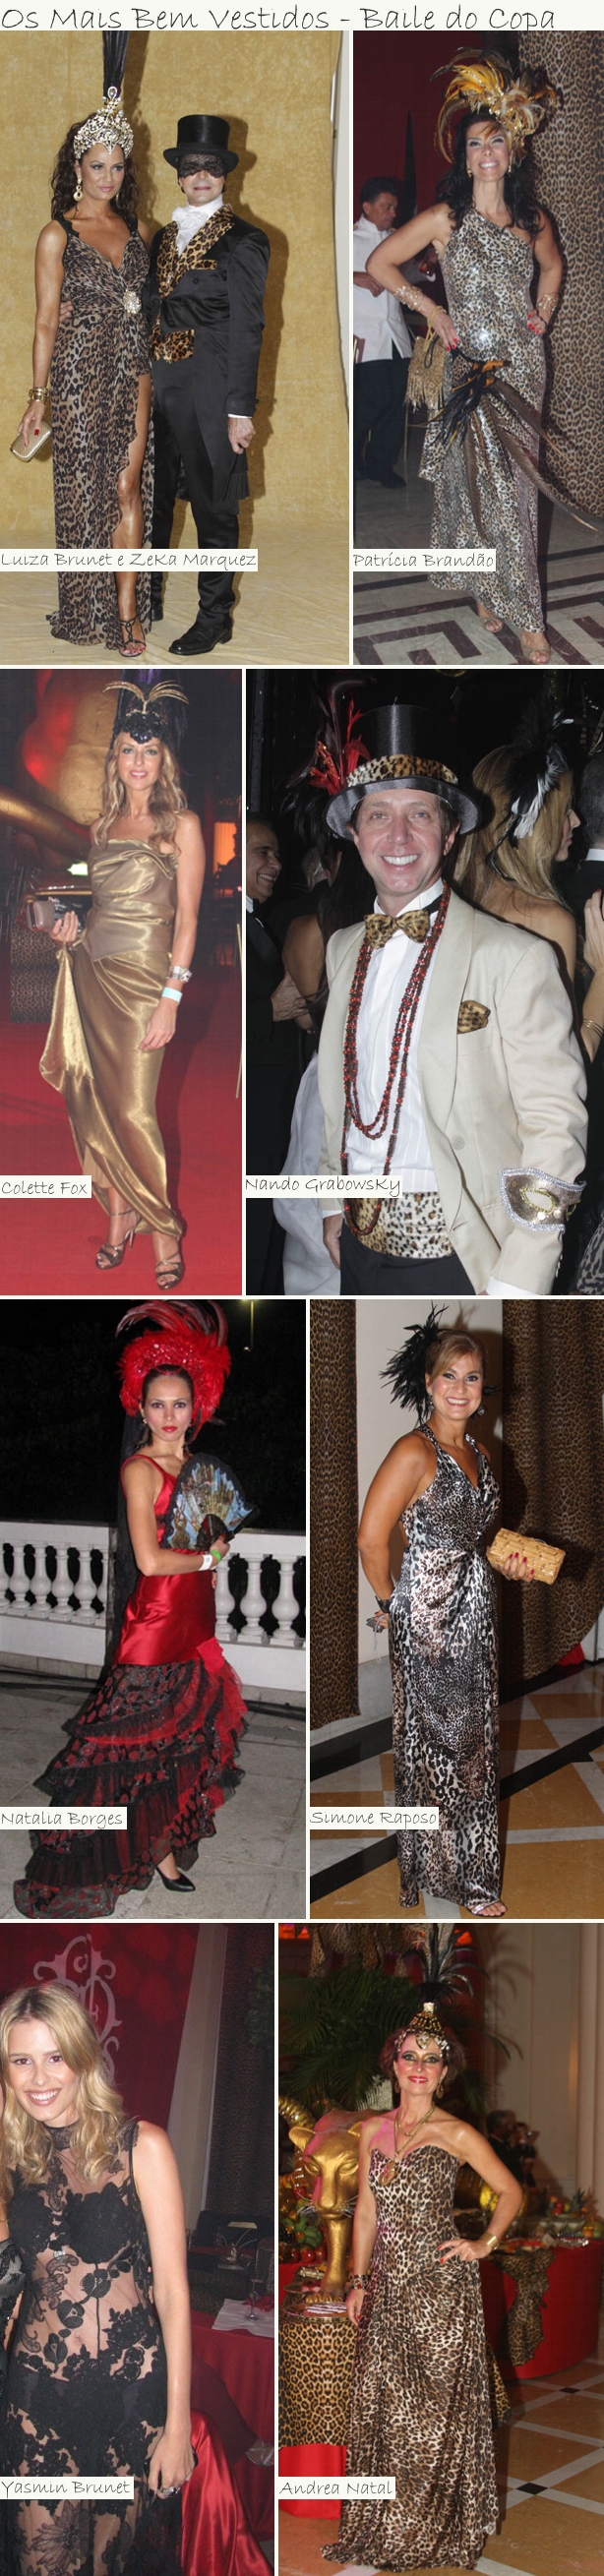 Os Mais Bem Vestidos Baile do Copa Os Mais Bem Vestidos Edição Especial Carnaval 2011 